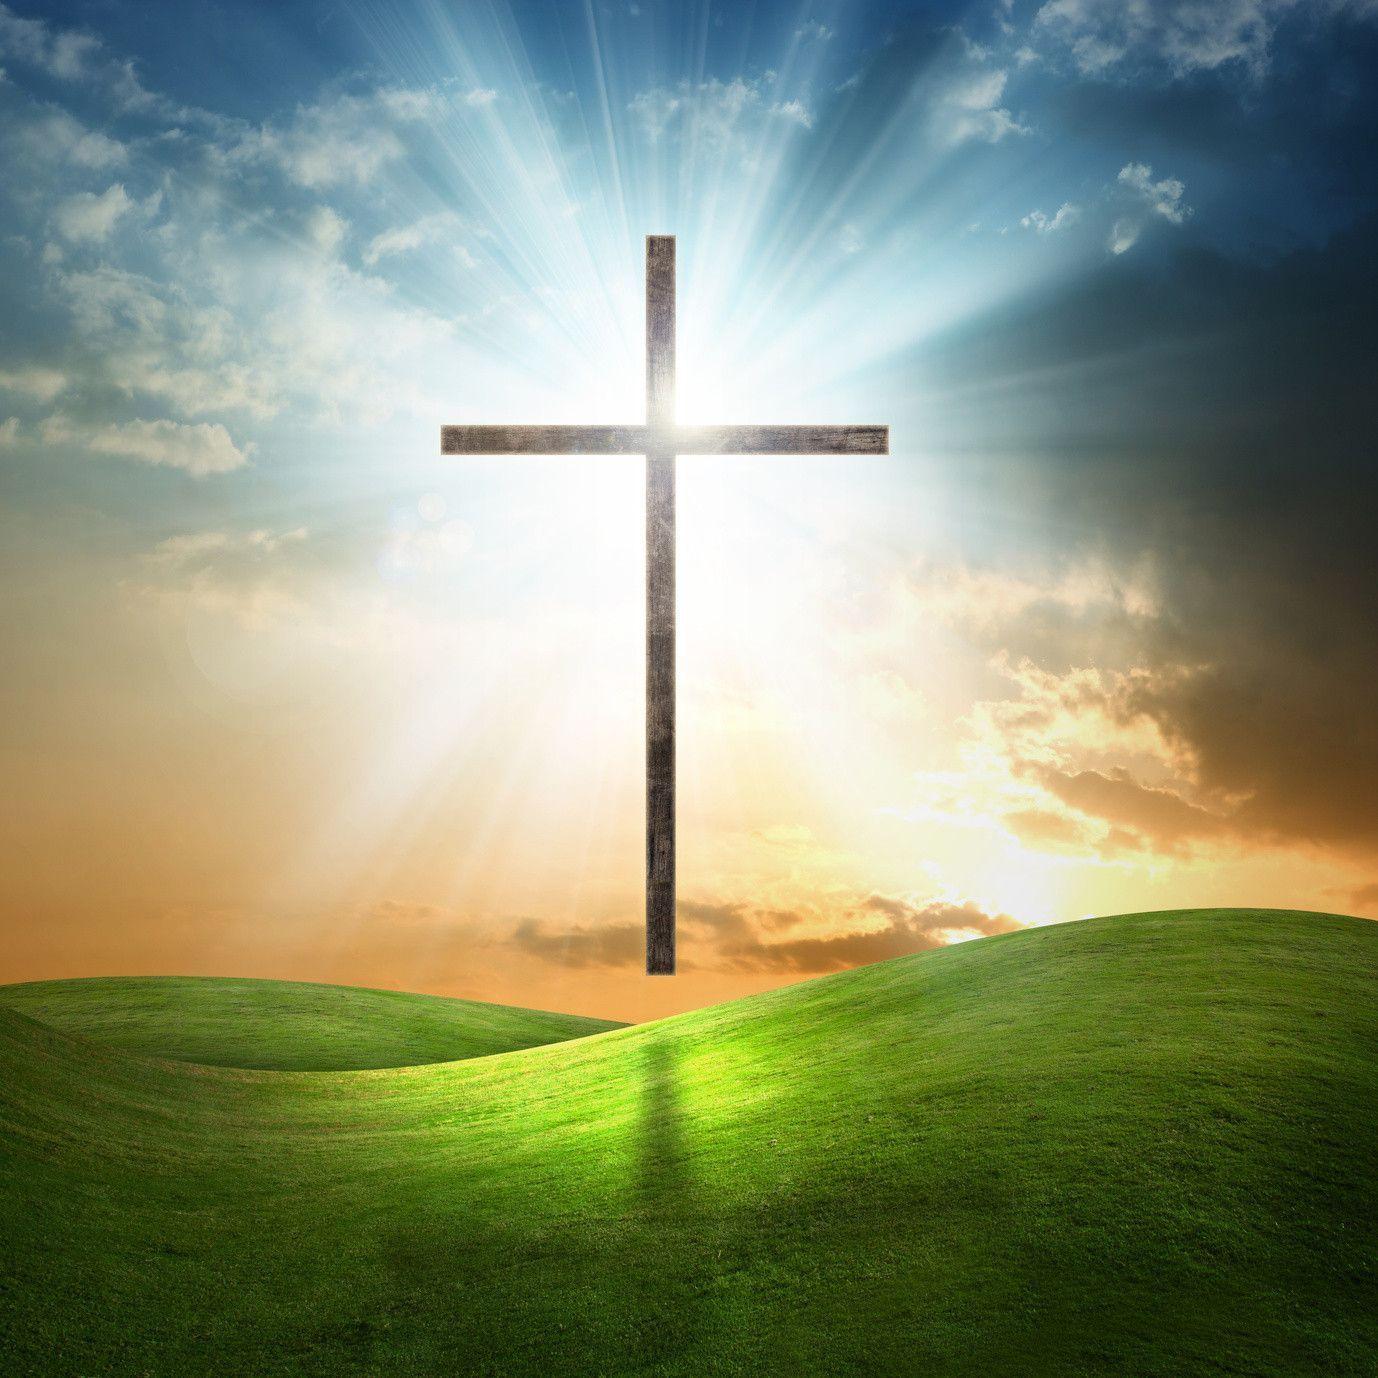 Christian cross on grassy background. GG design